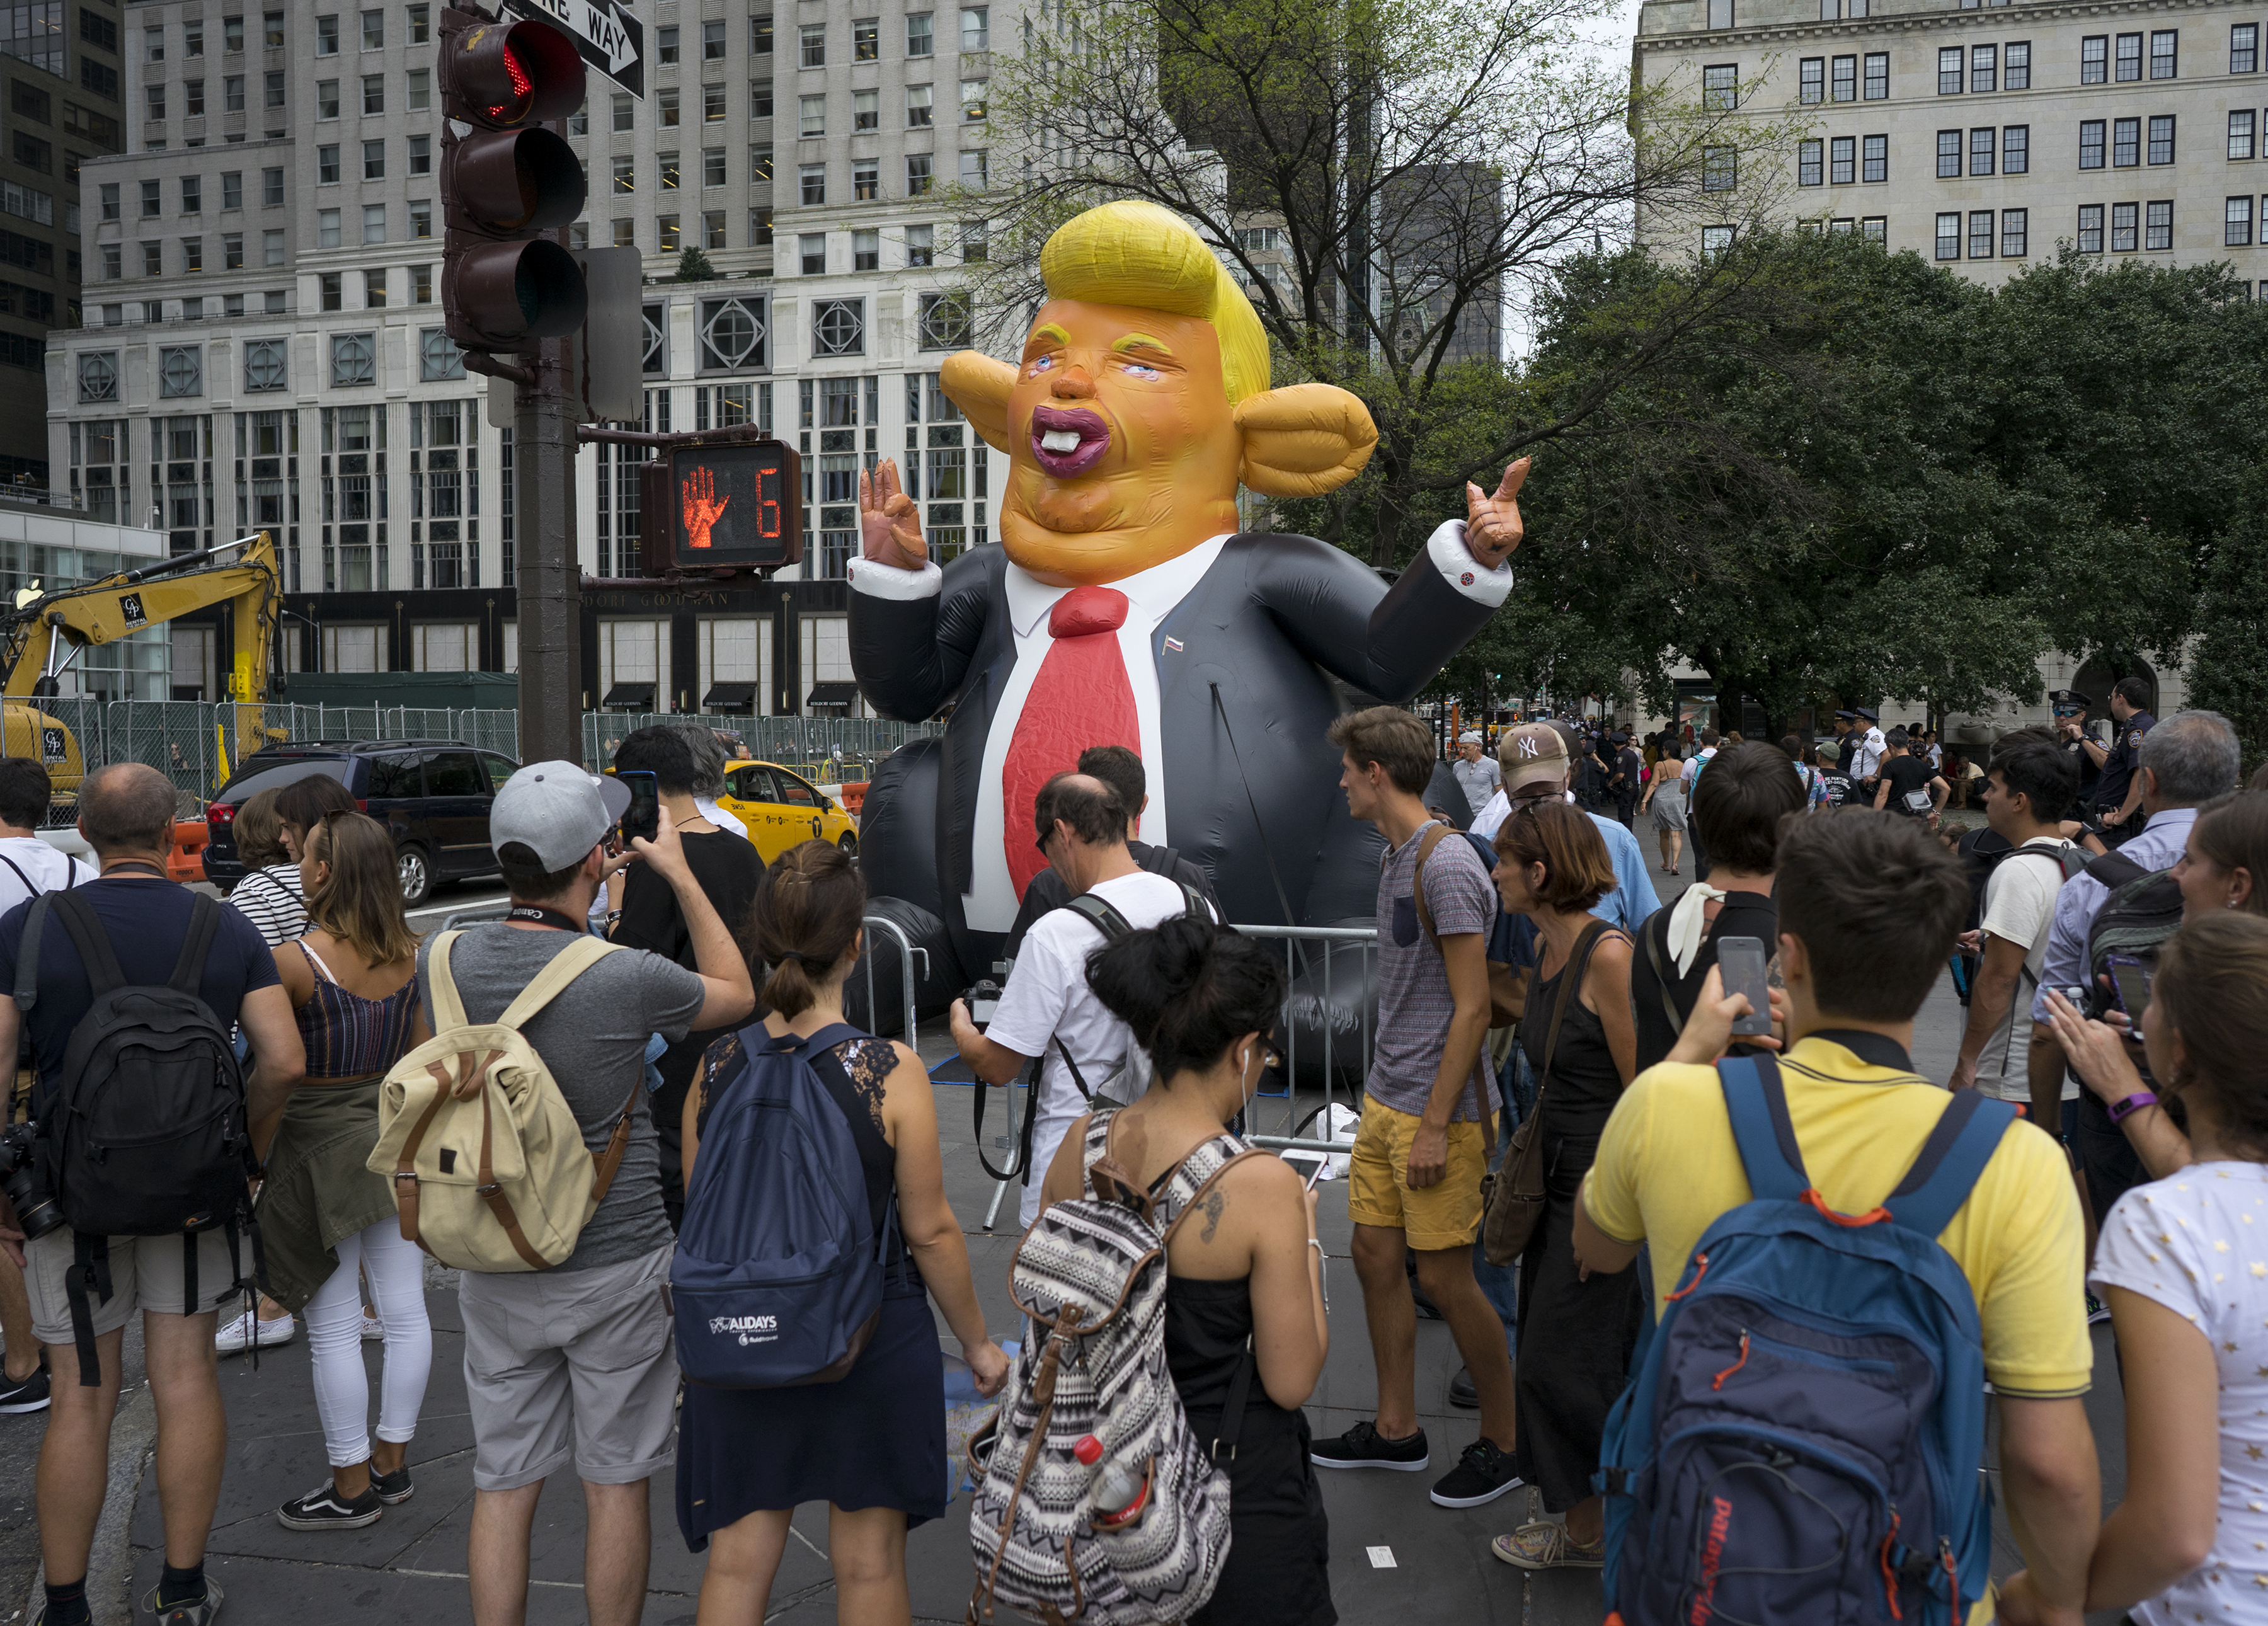 Trump caricature balloon.